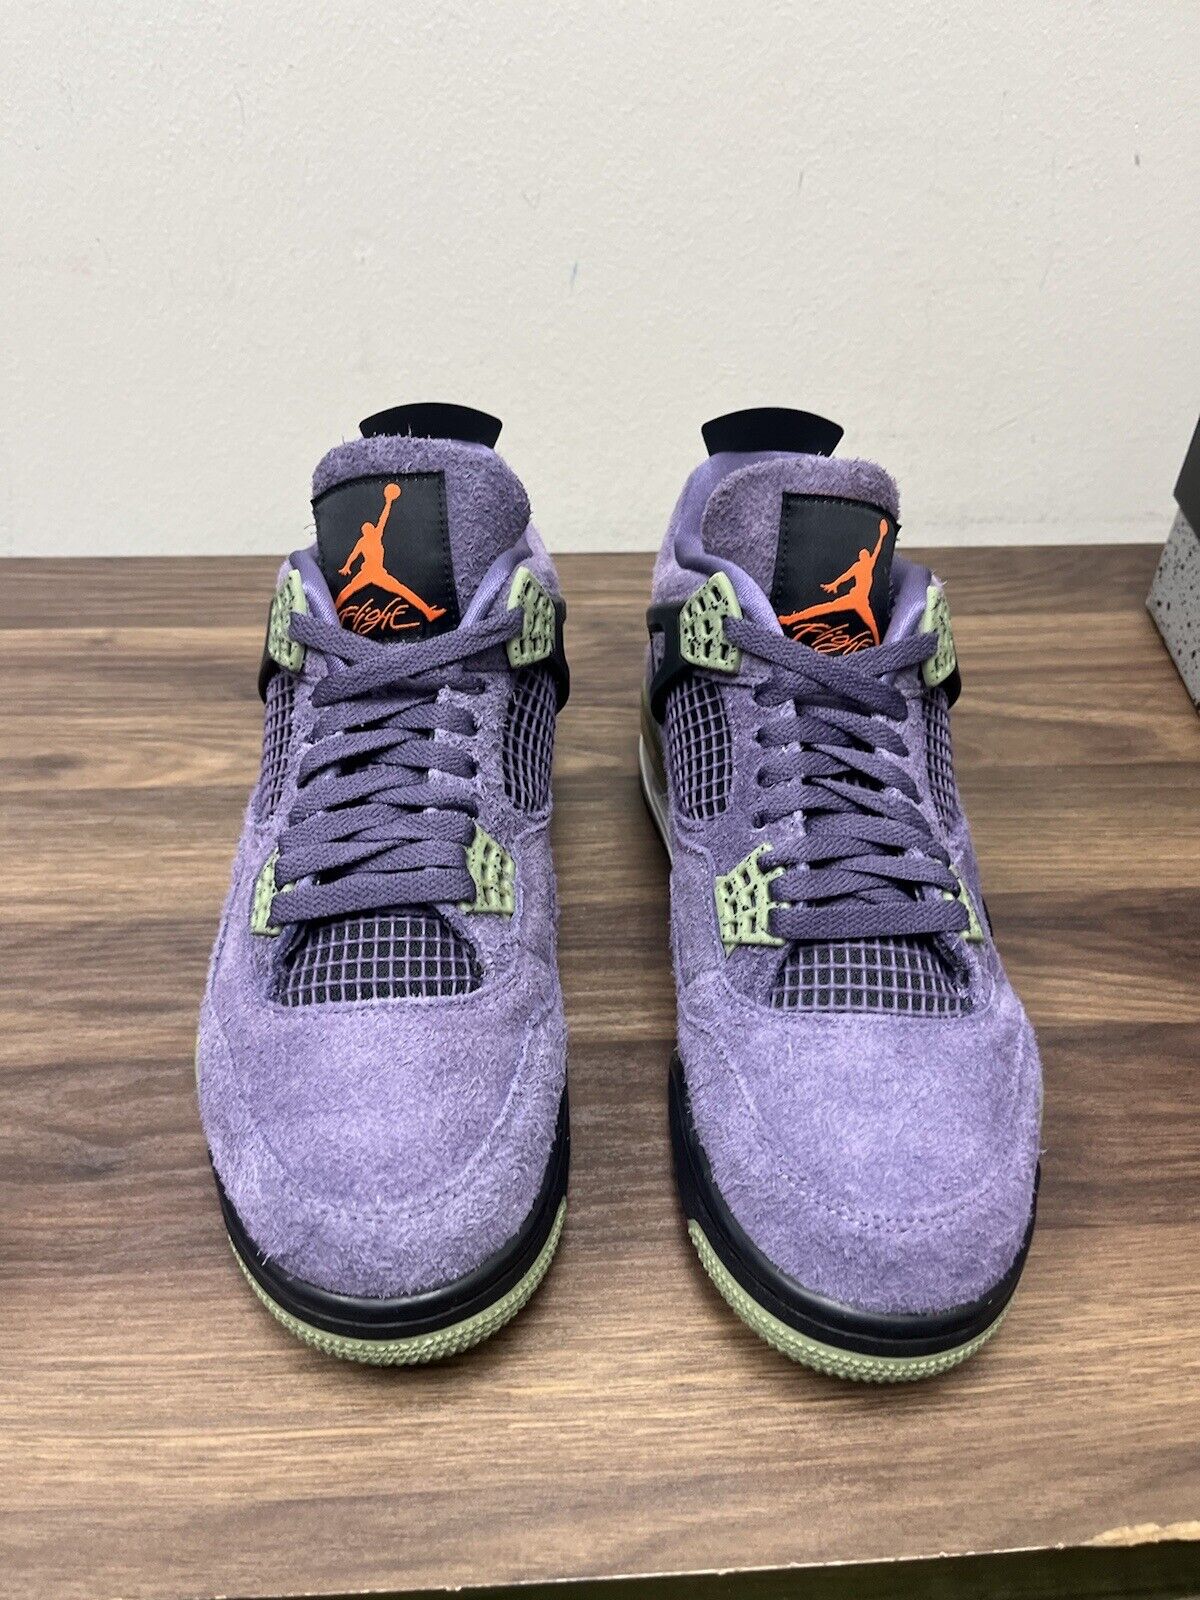 Size 11w (9.5 Men )- Jordan 4 Retro Mid Canyon Purple W